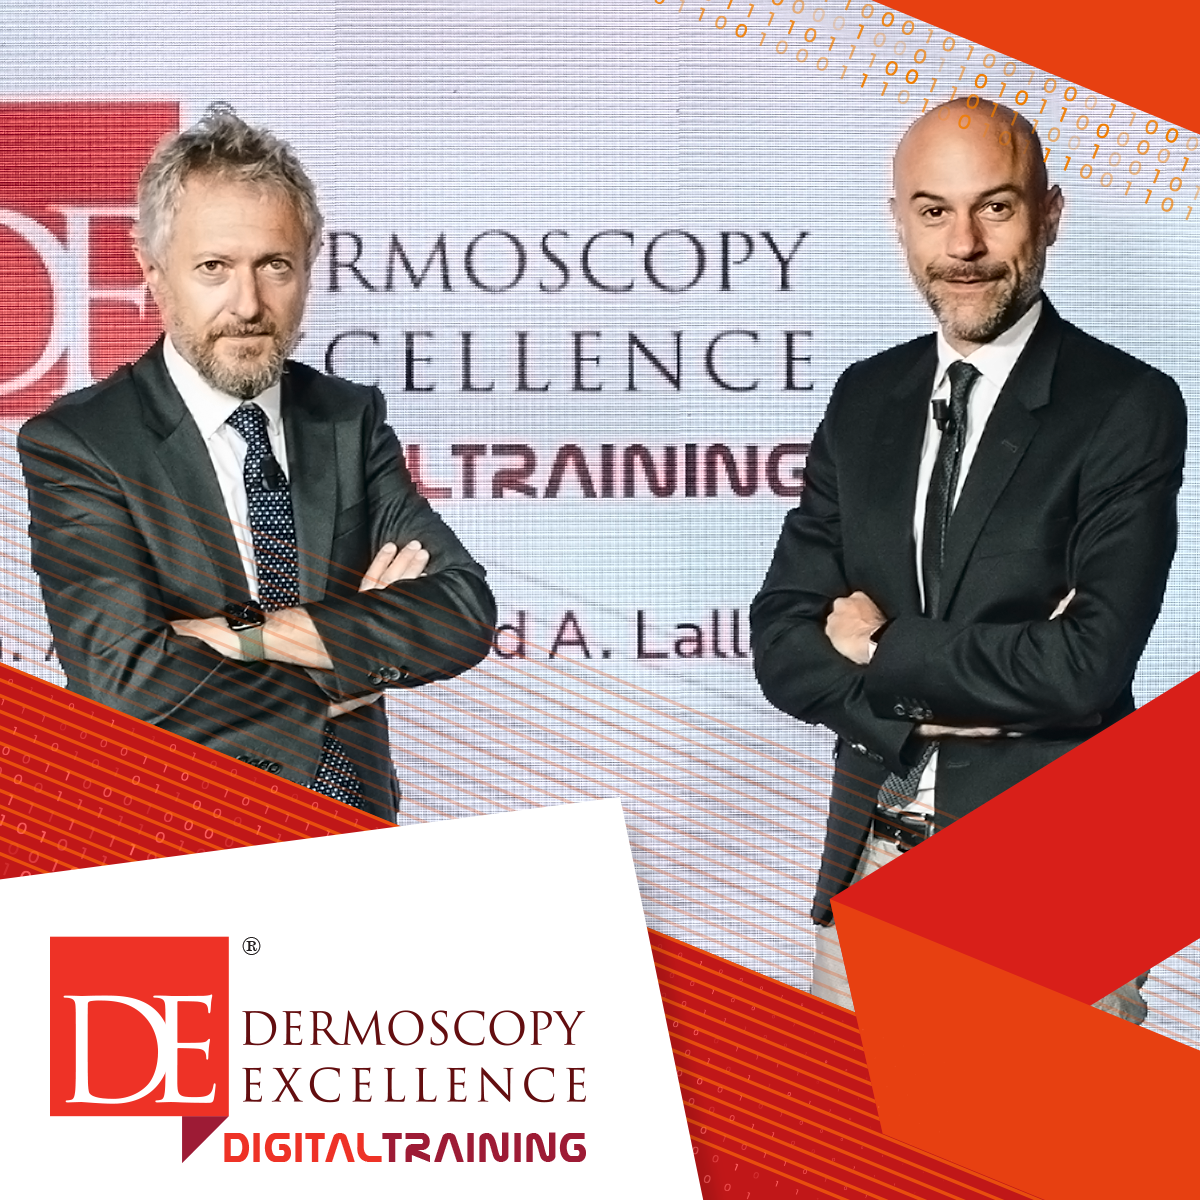 Dermoscopy Excellence Digital Training